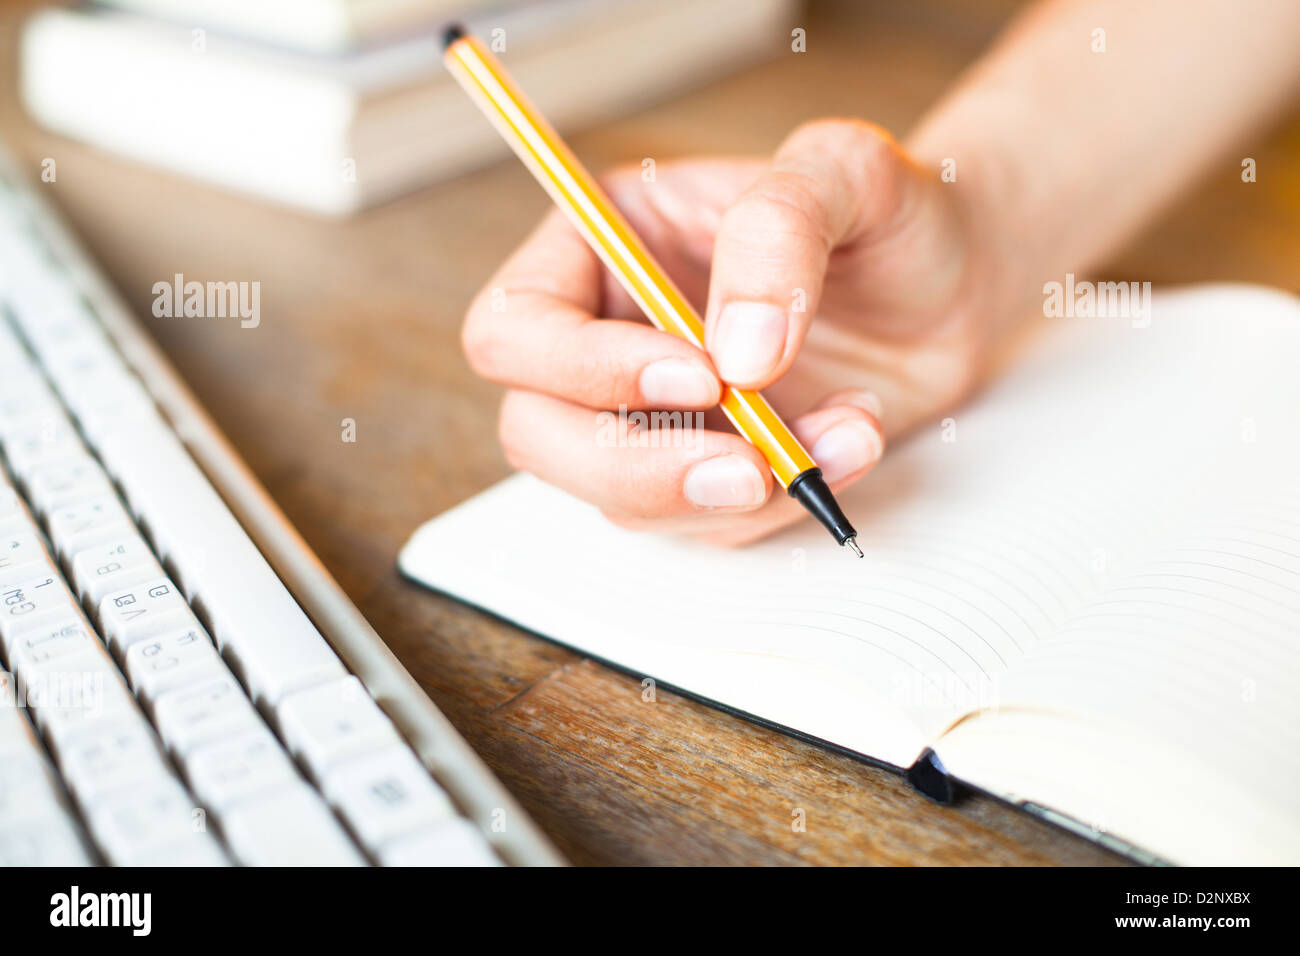 Händen schreibt einen Stift in einem Notebook, Computer-Tastatur und einen Stapel Bücher im Hintergrund Stockfoto